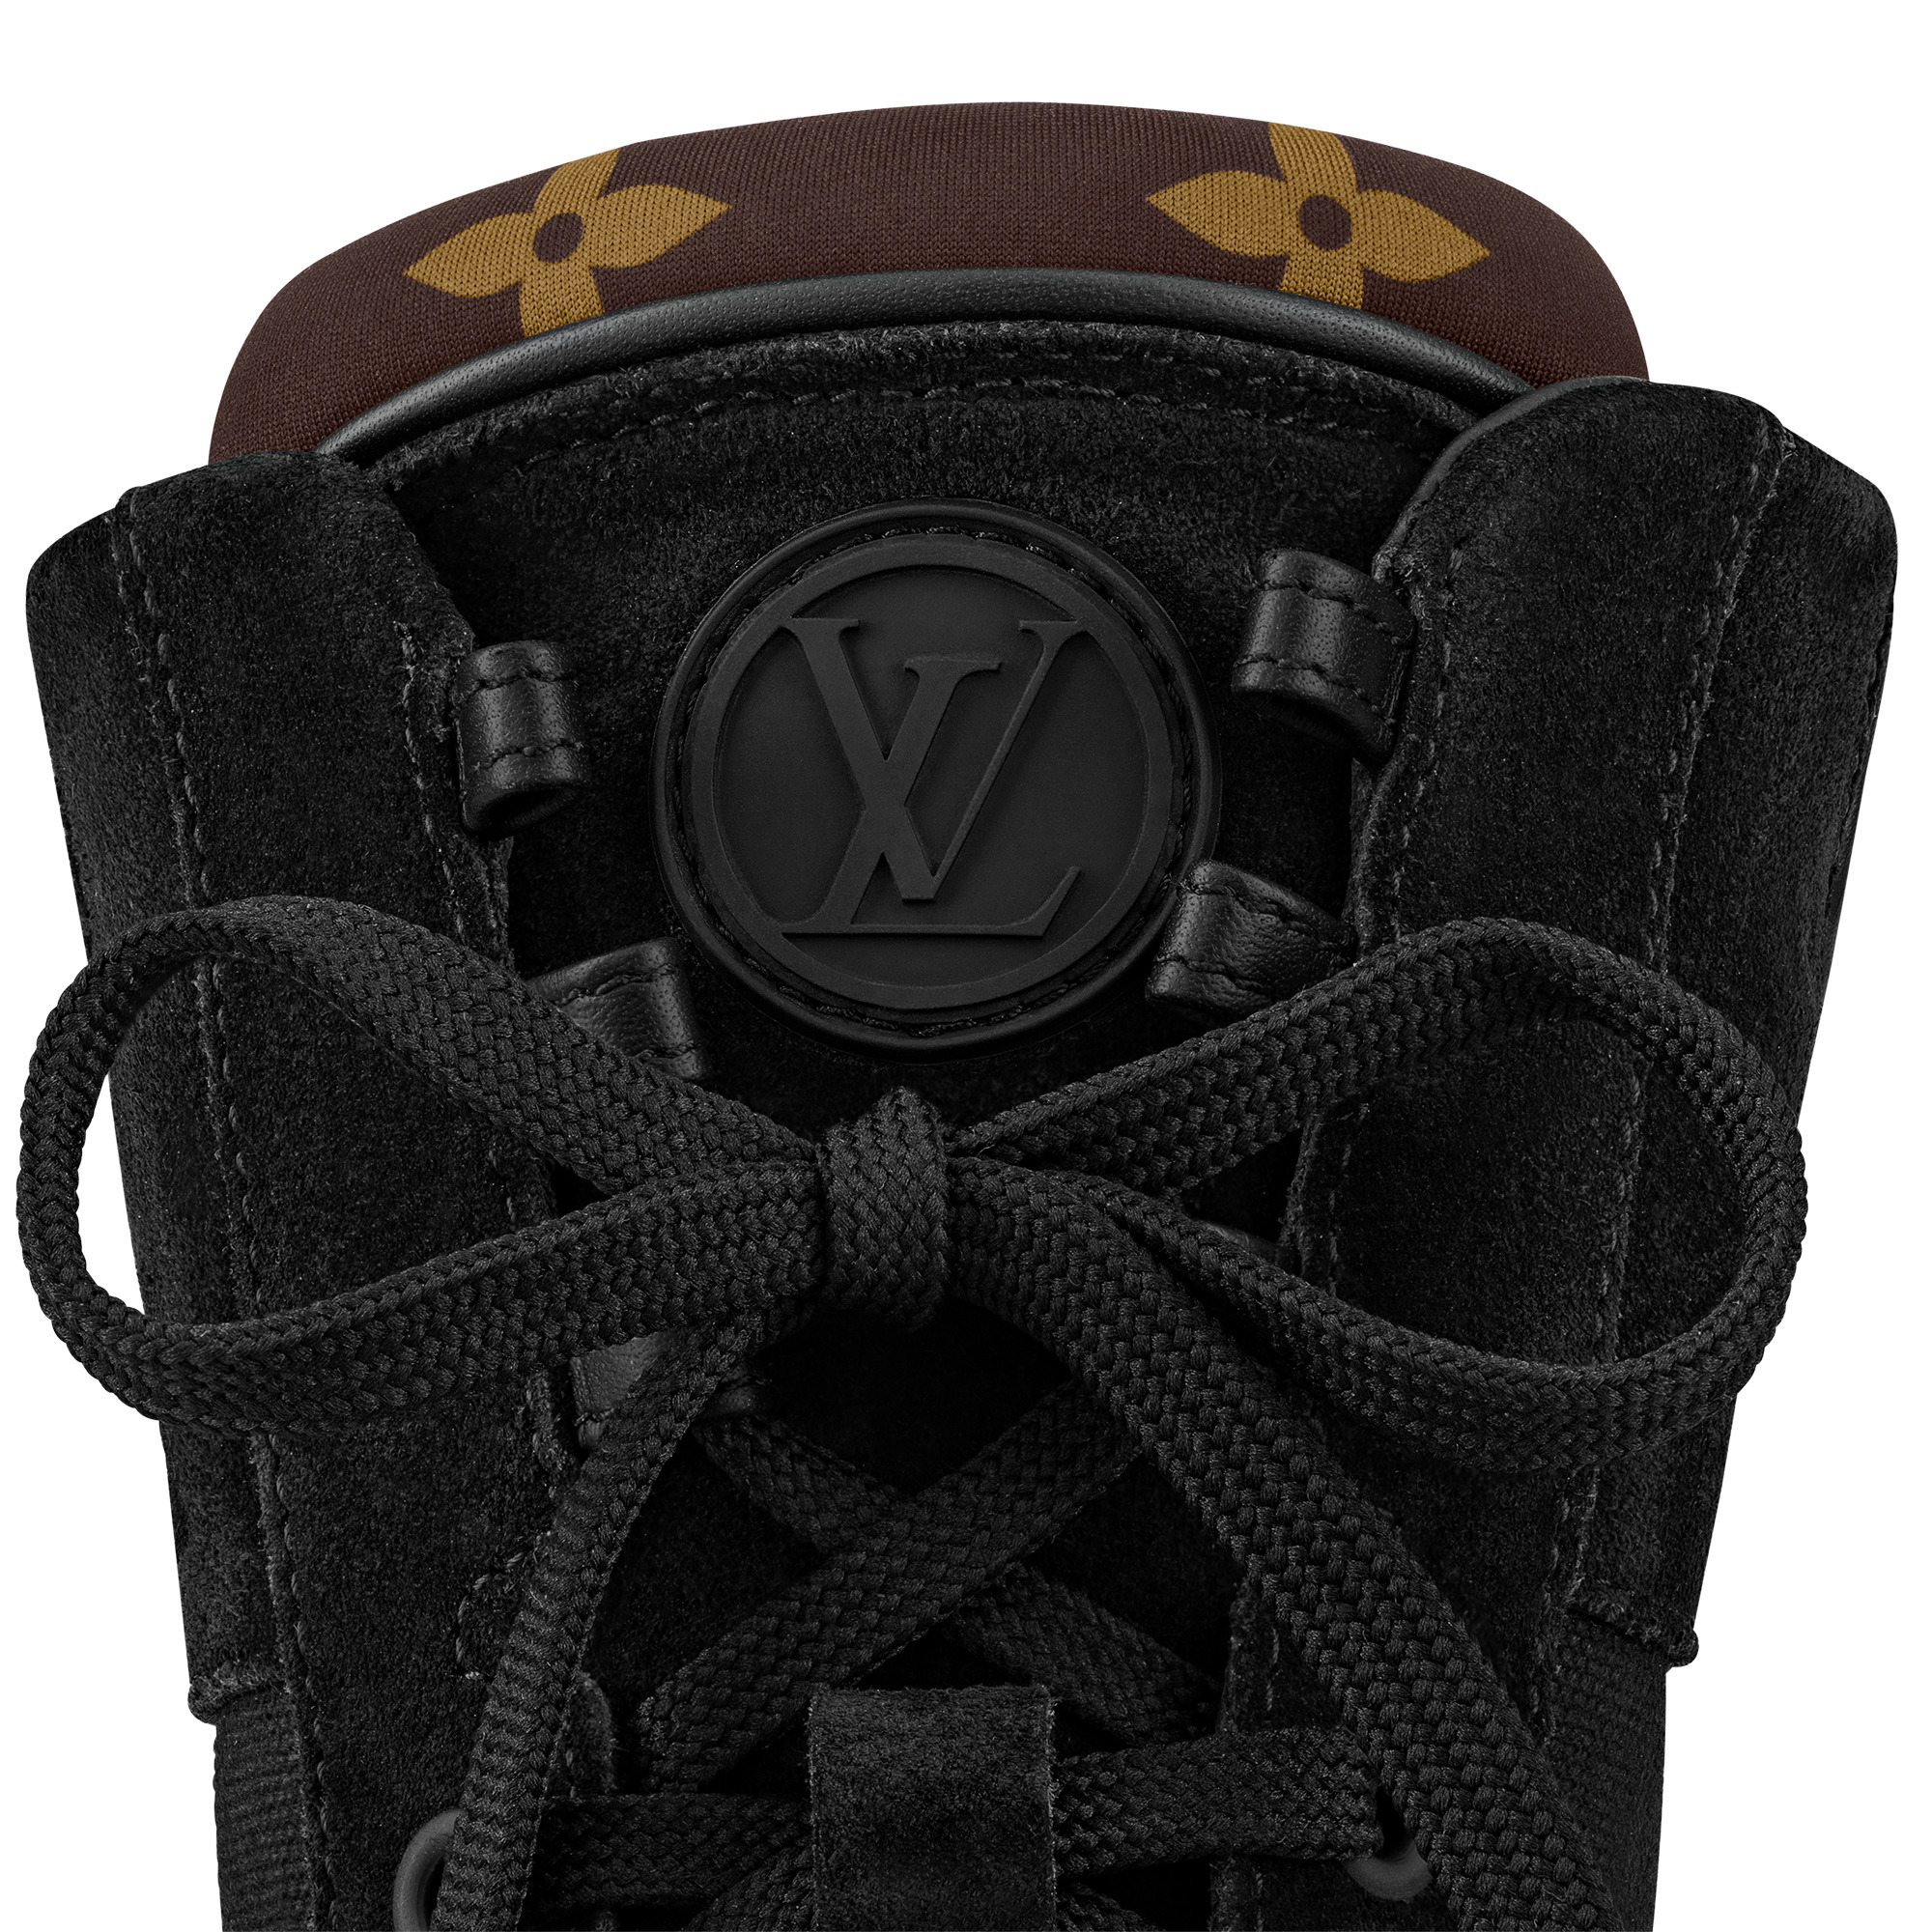 LV Archlight 2.0 Men's Platform Ankle Boot - Shoes